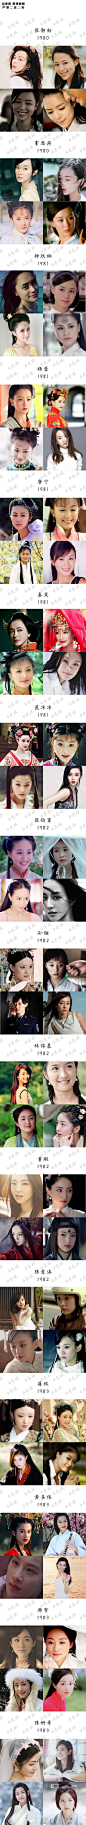 150位华人女演员（1950—1999年出生）颜值一览表 ，感受一下不同年代的美颜盛世。不仅是审美的变迁，更是时尚的轮回。